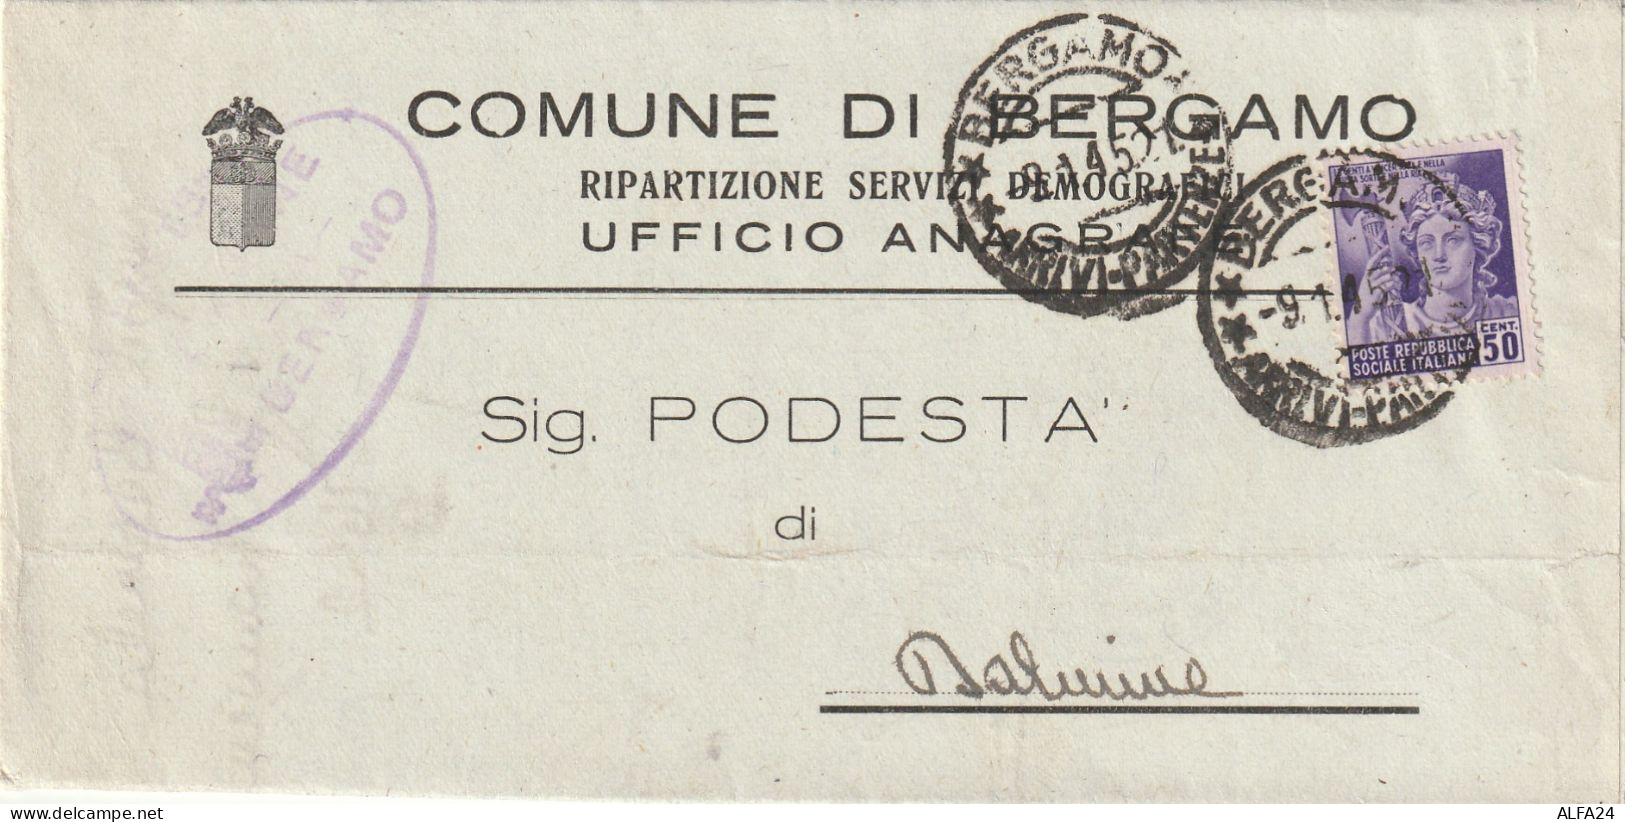 LETTERA 1945 RSI C.50 MON DIST TIMBRO BERGAMO DALMINE (YK510 - Storia Postale